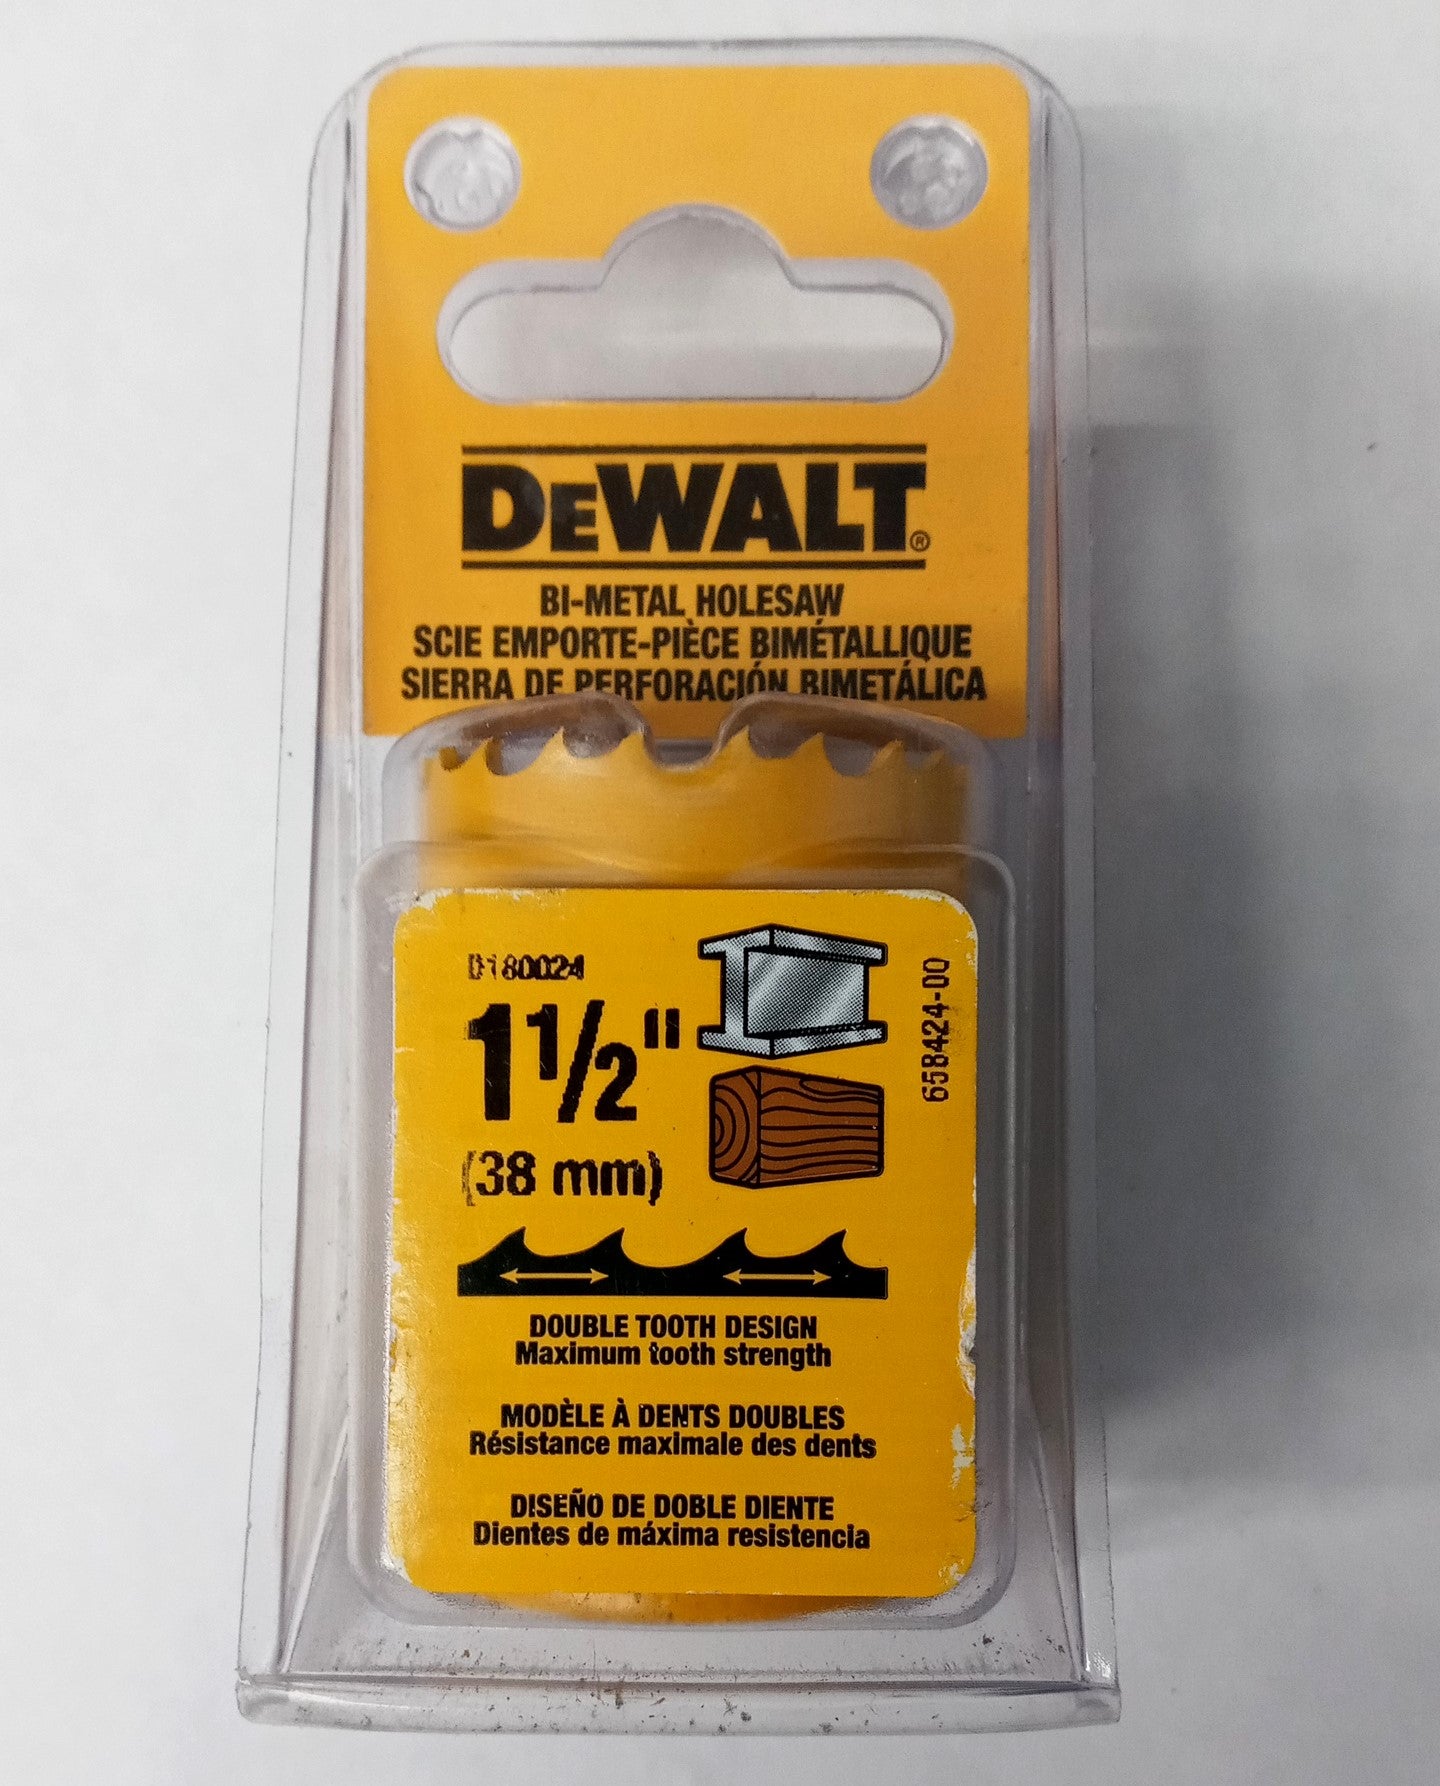 DeWalt D180024 1-1/2" (38mm) Bi-Metal Holesaw USA